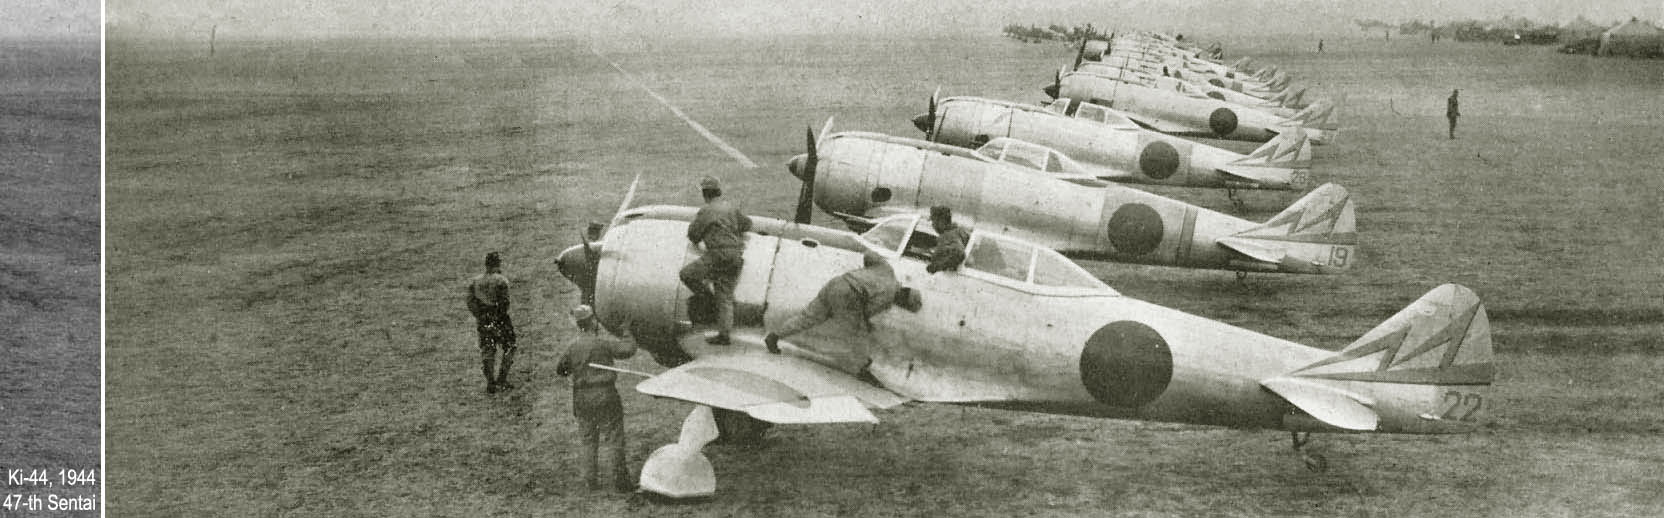 ການນໍາໃຊ້ການຕໍ່ສູ້ຂອງ Nakajima Ki-44 Shōki, ພາກ 2